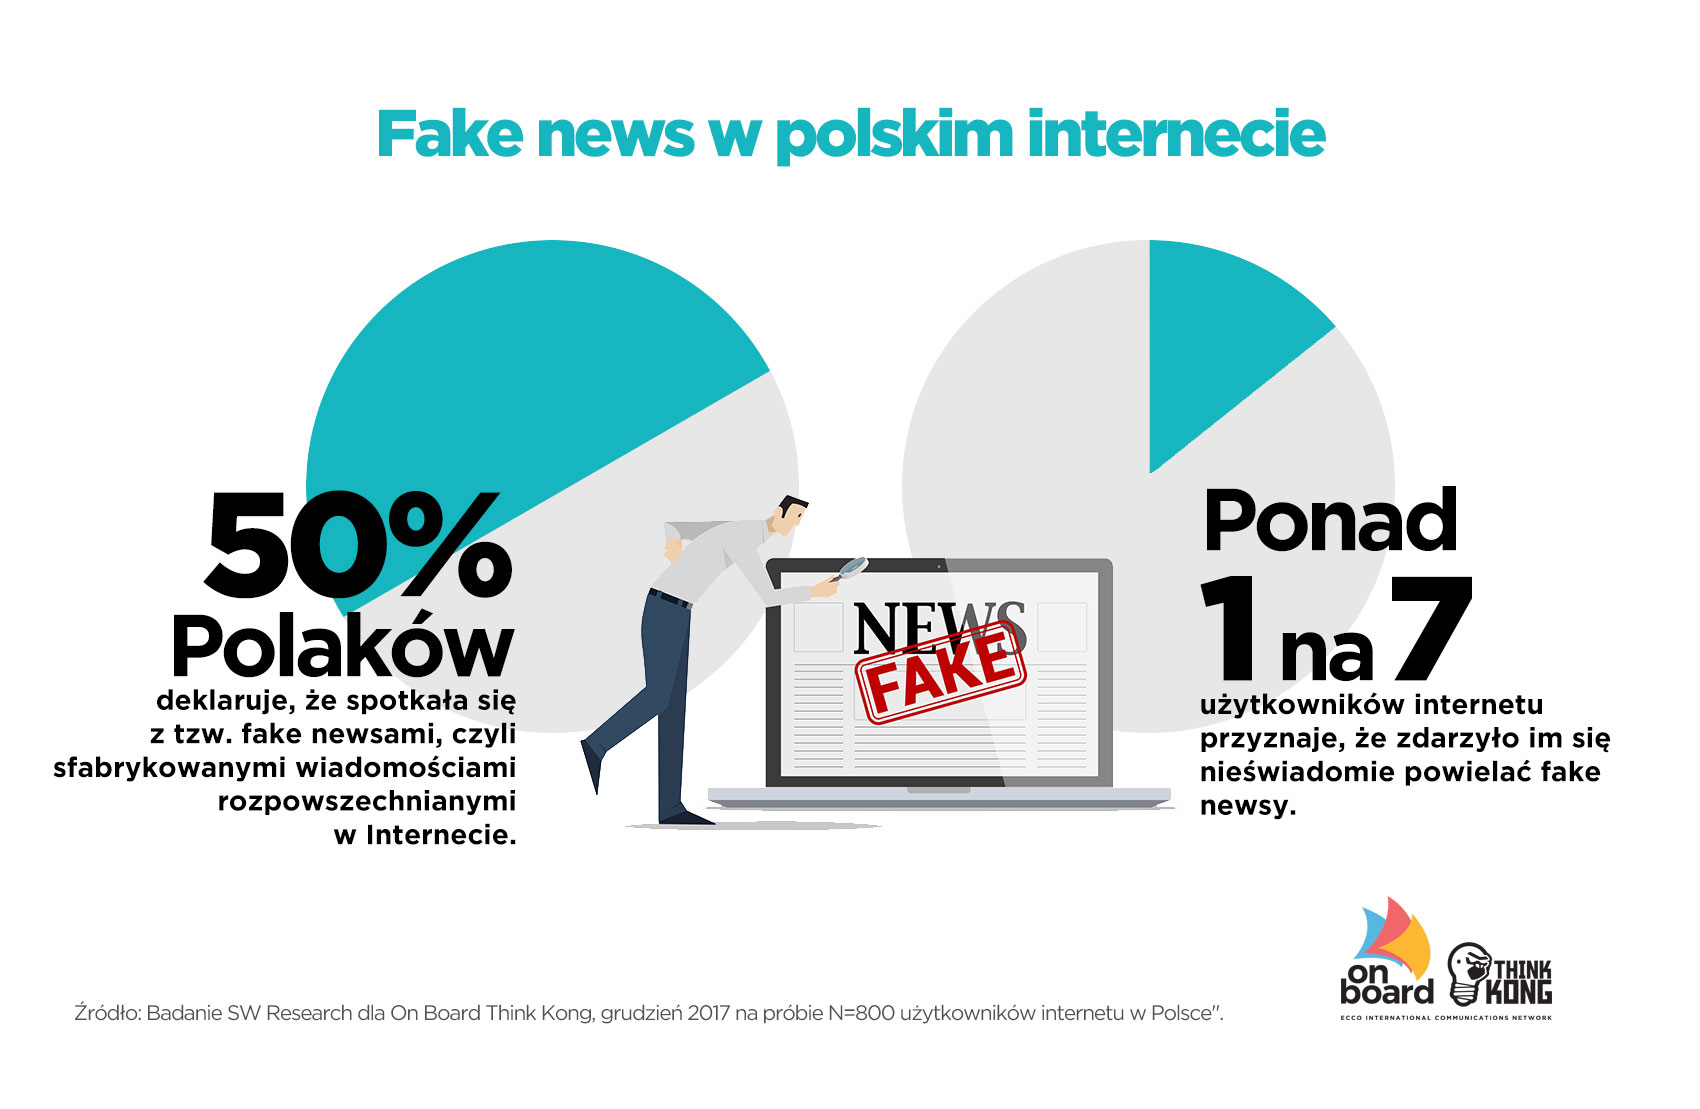 Fake news w polskim internecie